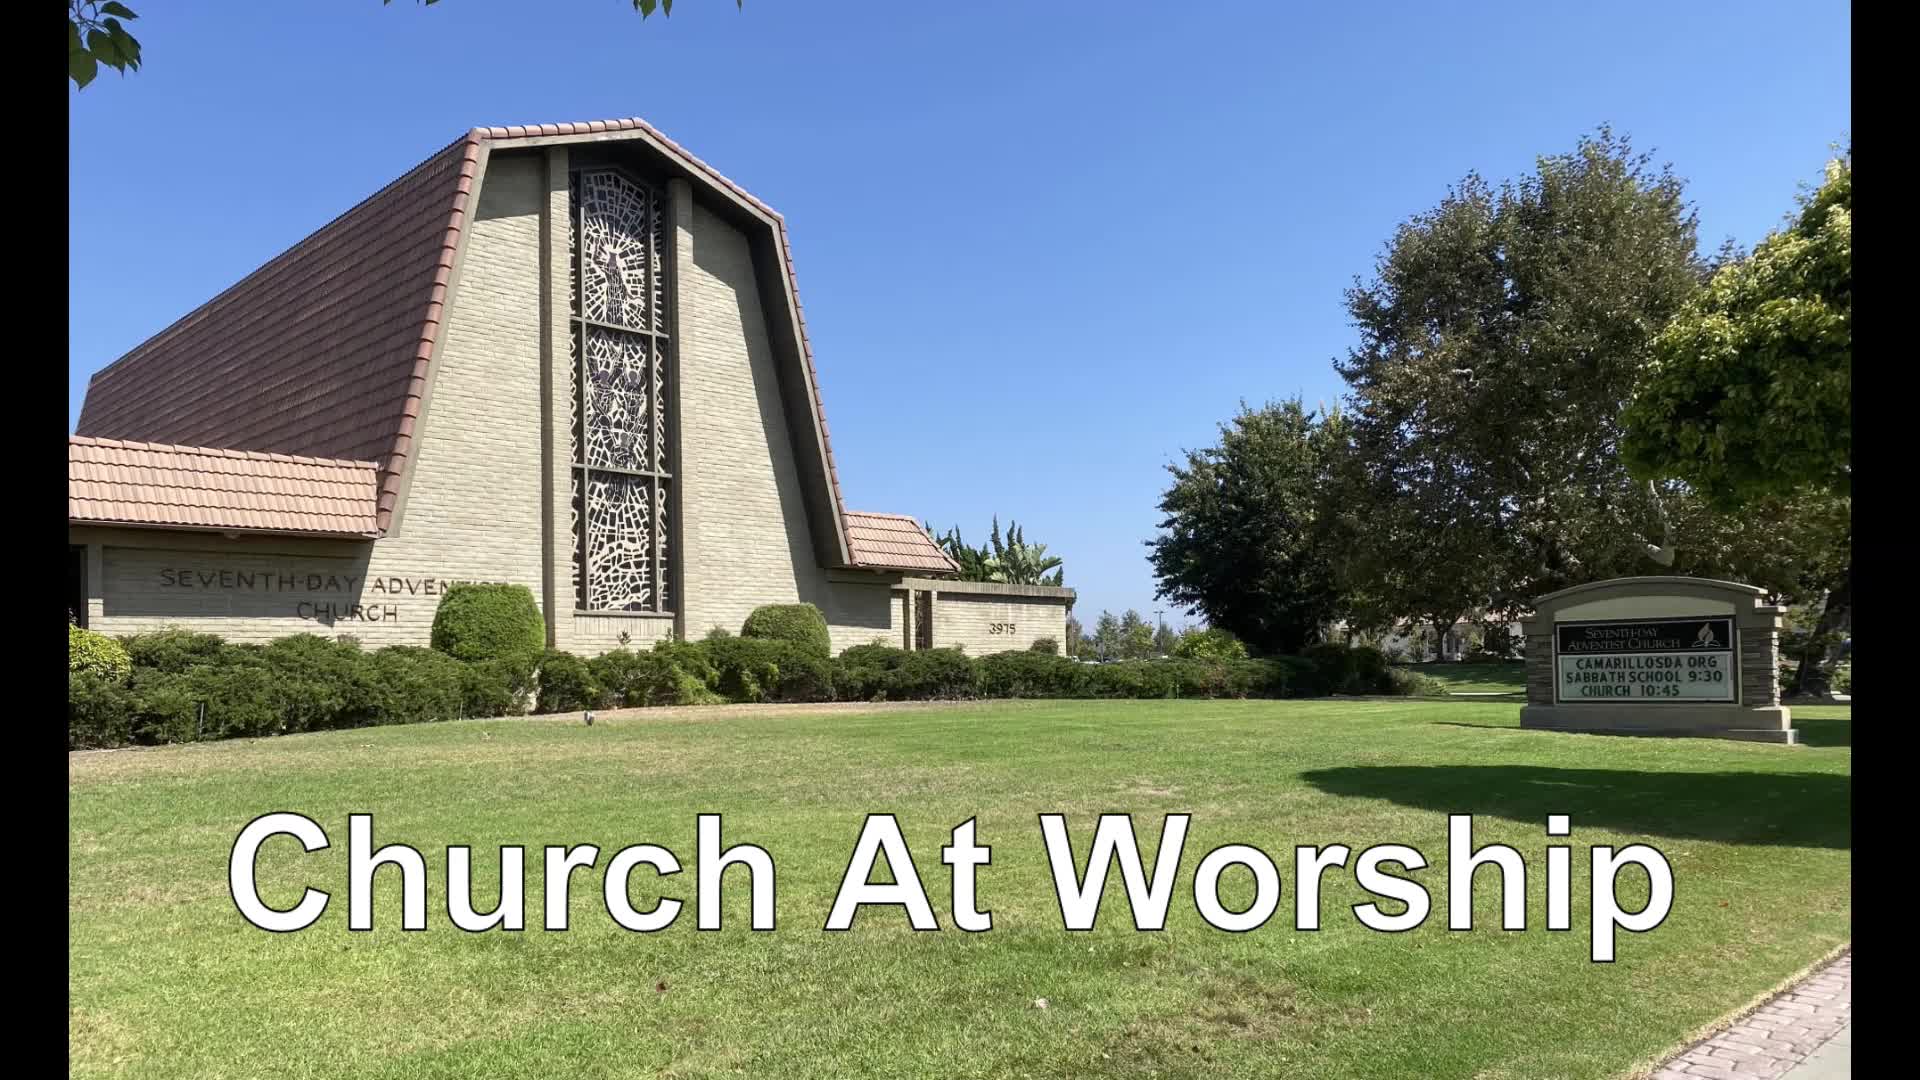 02/13/2021 Church At Worship